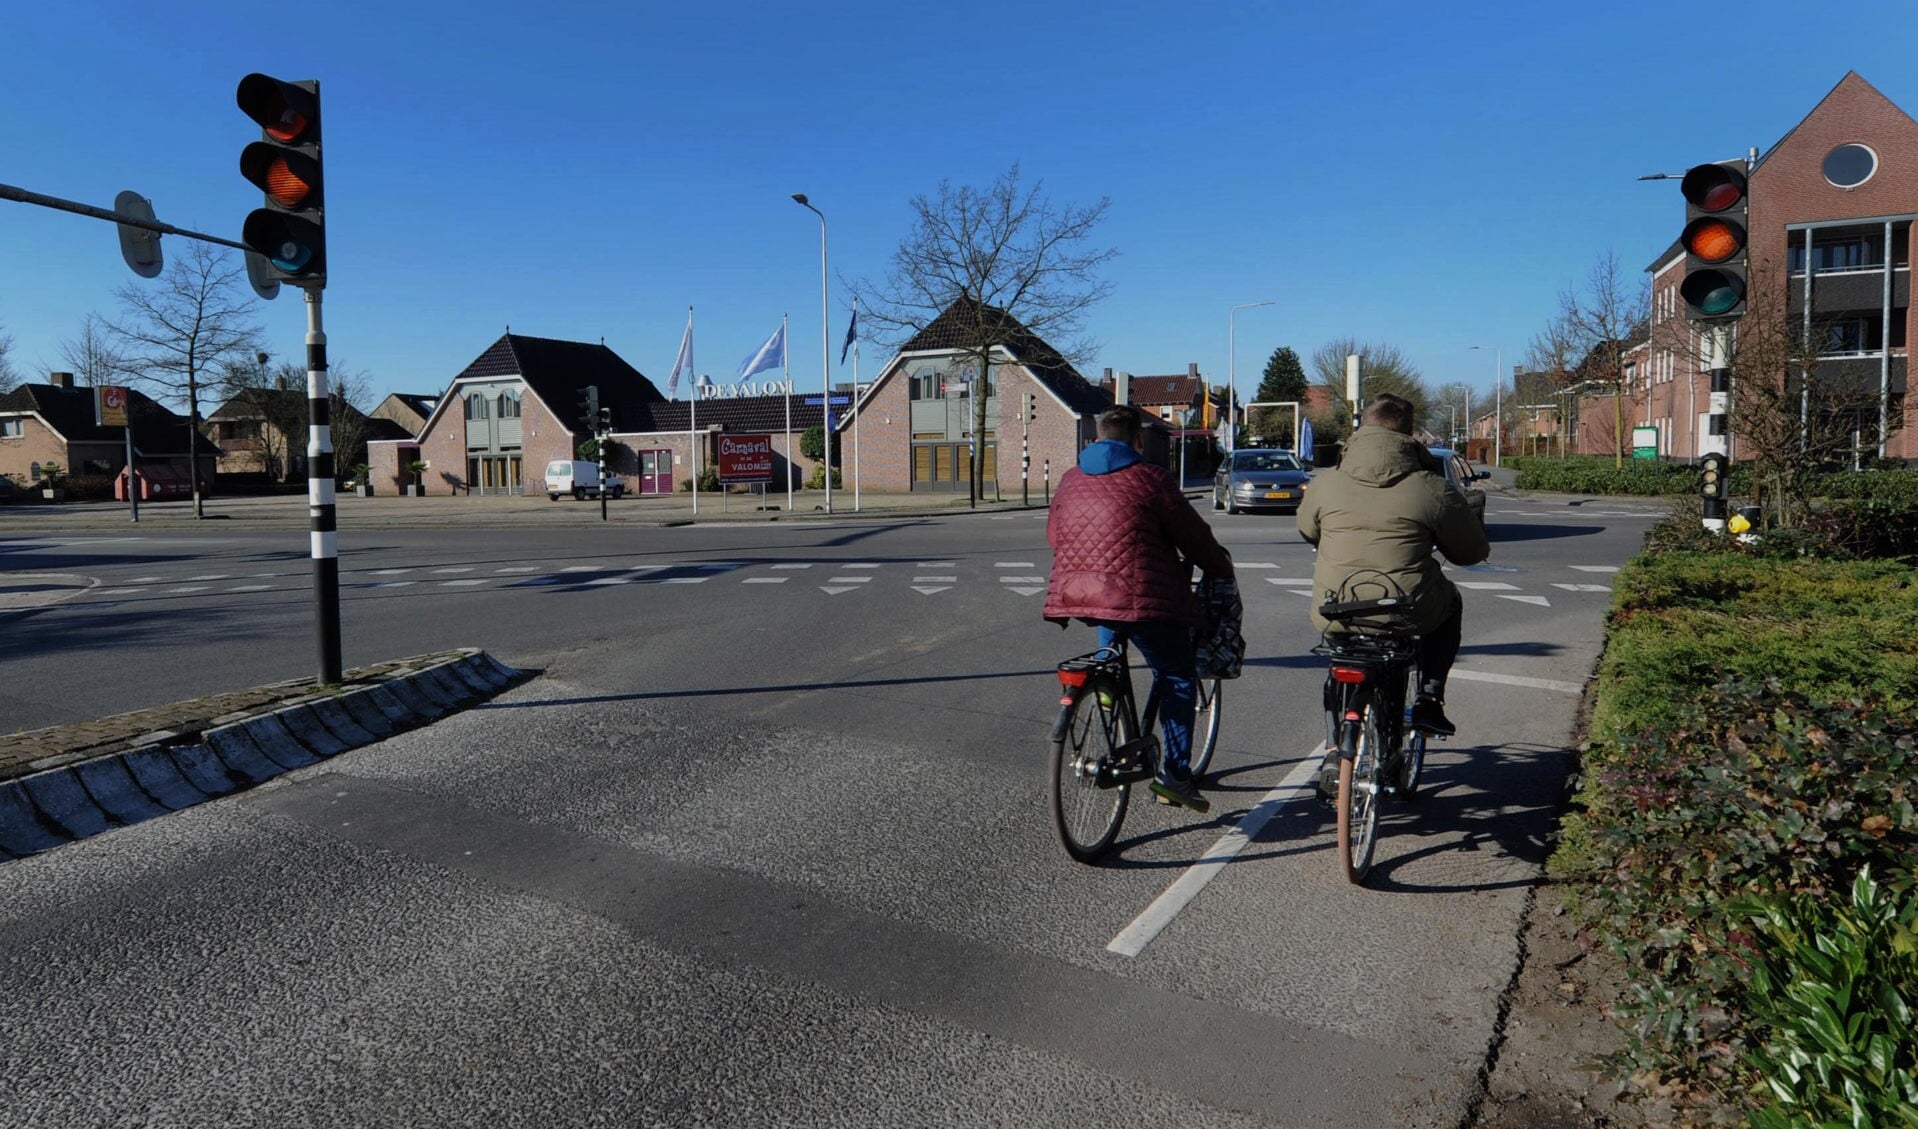 Vooral fietsers gaan profiteren van een vernieuwd kruising. Rechtsaf verkeer hoeft straks niet meer voor rood te wachten. (foto Sjaak Veldkamp)